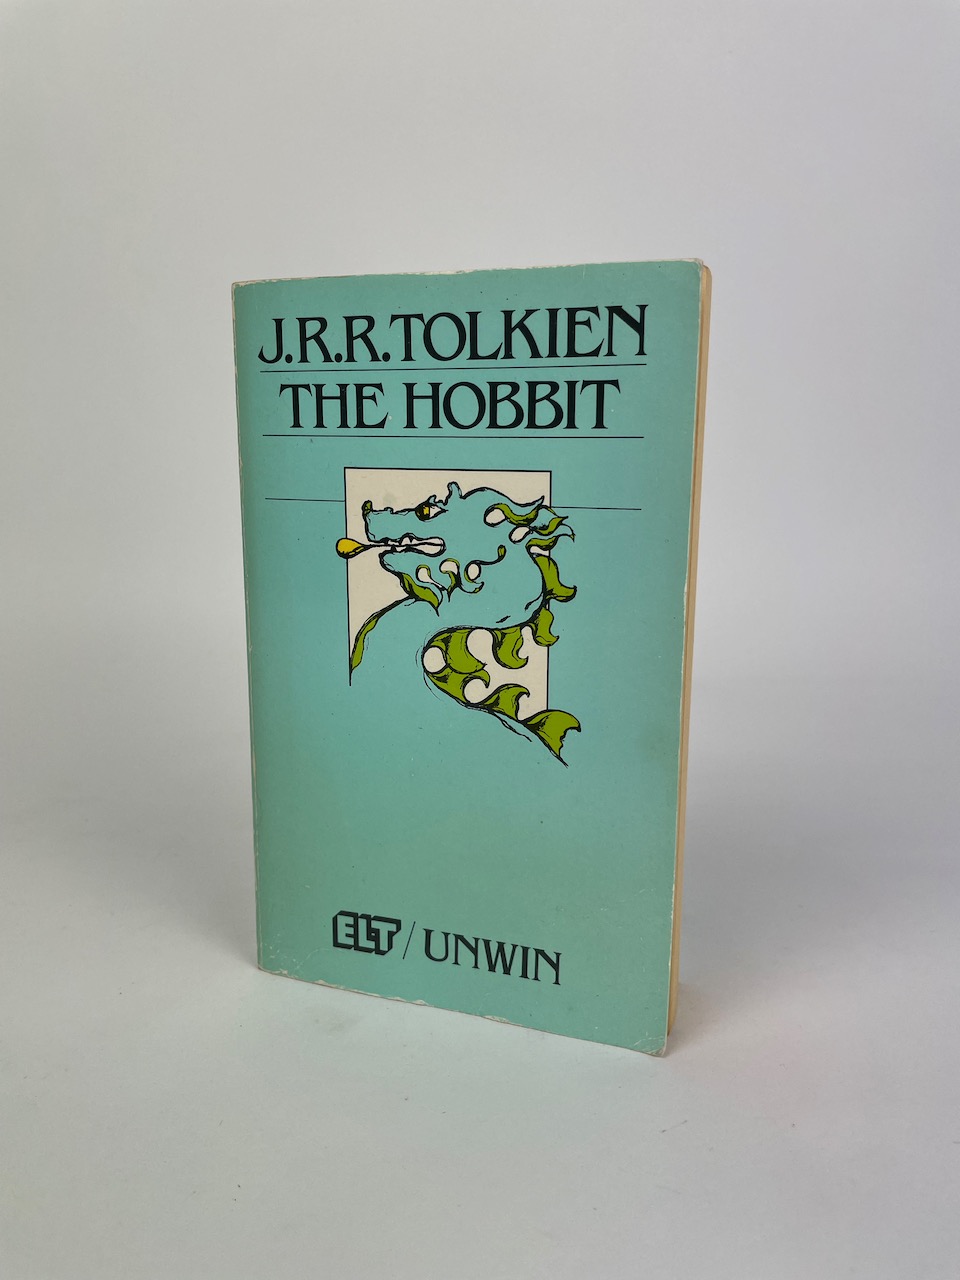 J.R.R. Tolkien: The Hobbit (ELT Edition), published by ELT / Unwin Paperbacks, 1987